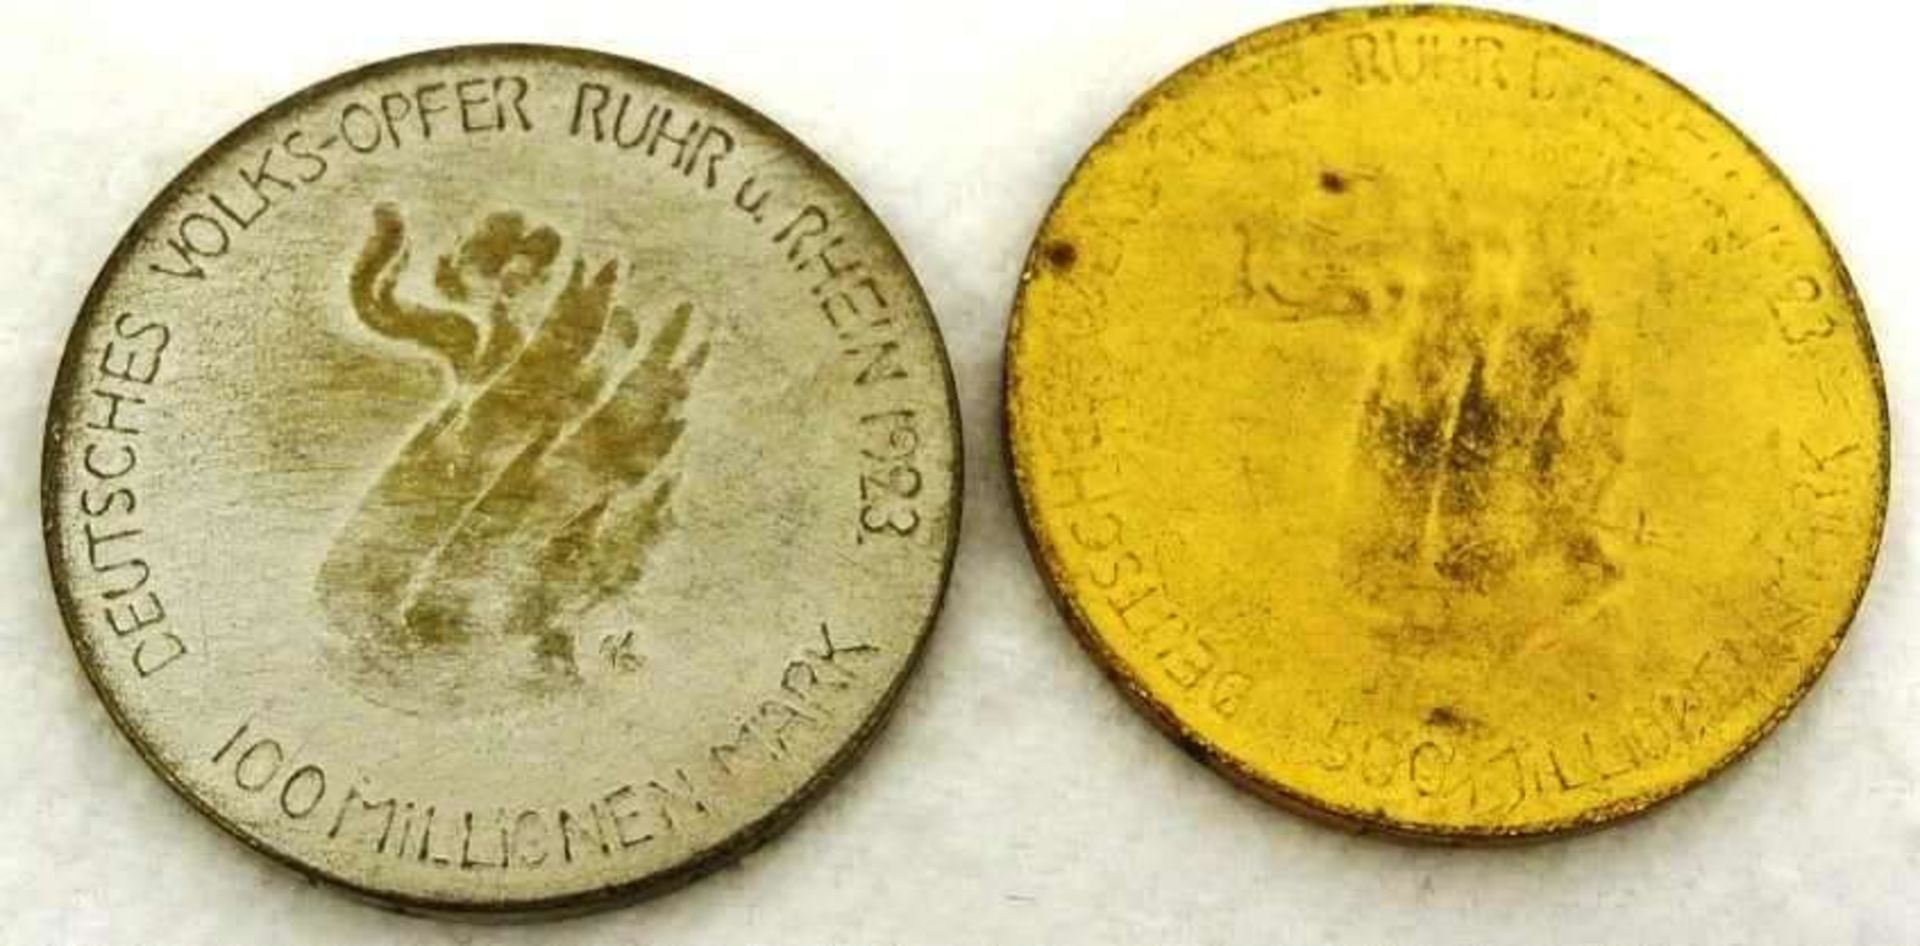 Notgeld Rhein-Ruhr Münchner Medailleure Goetz Karl, 100 und 500 Millionen Mark, Deutsches Volksopfer